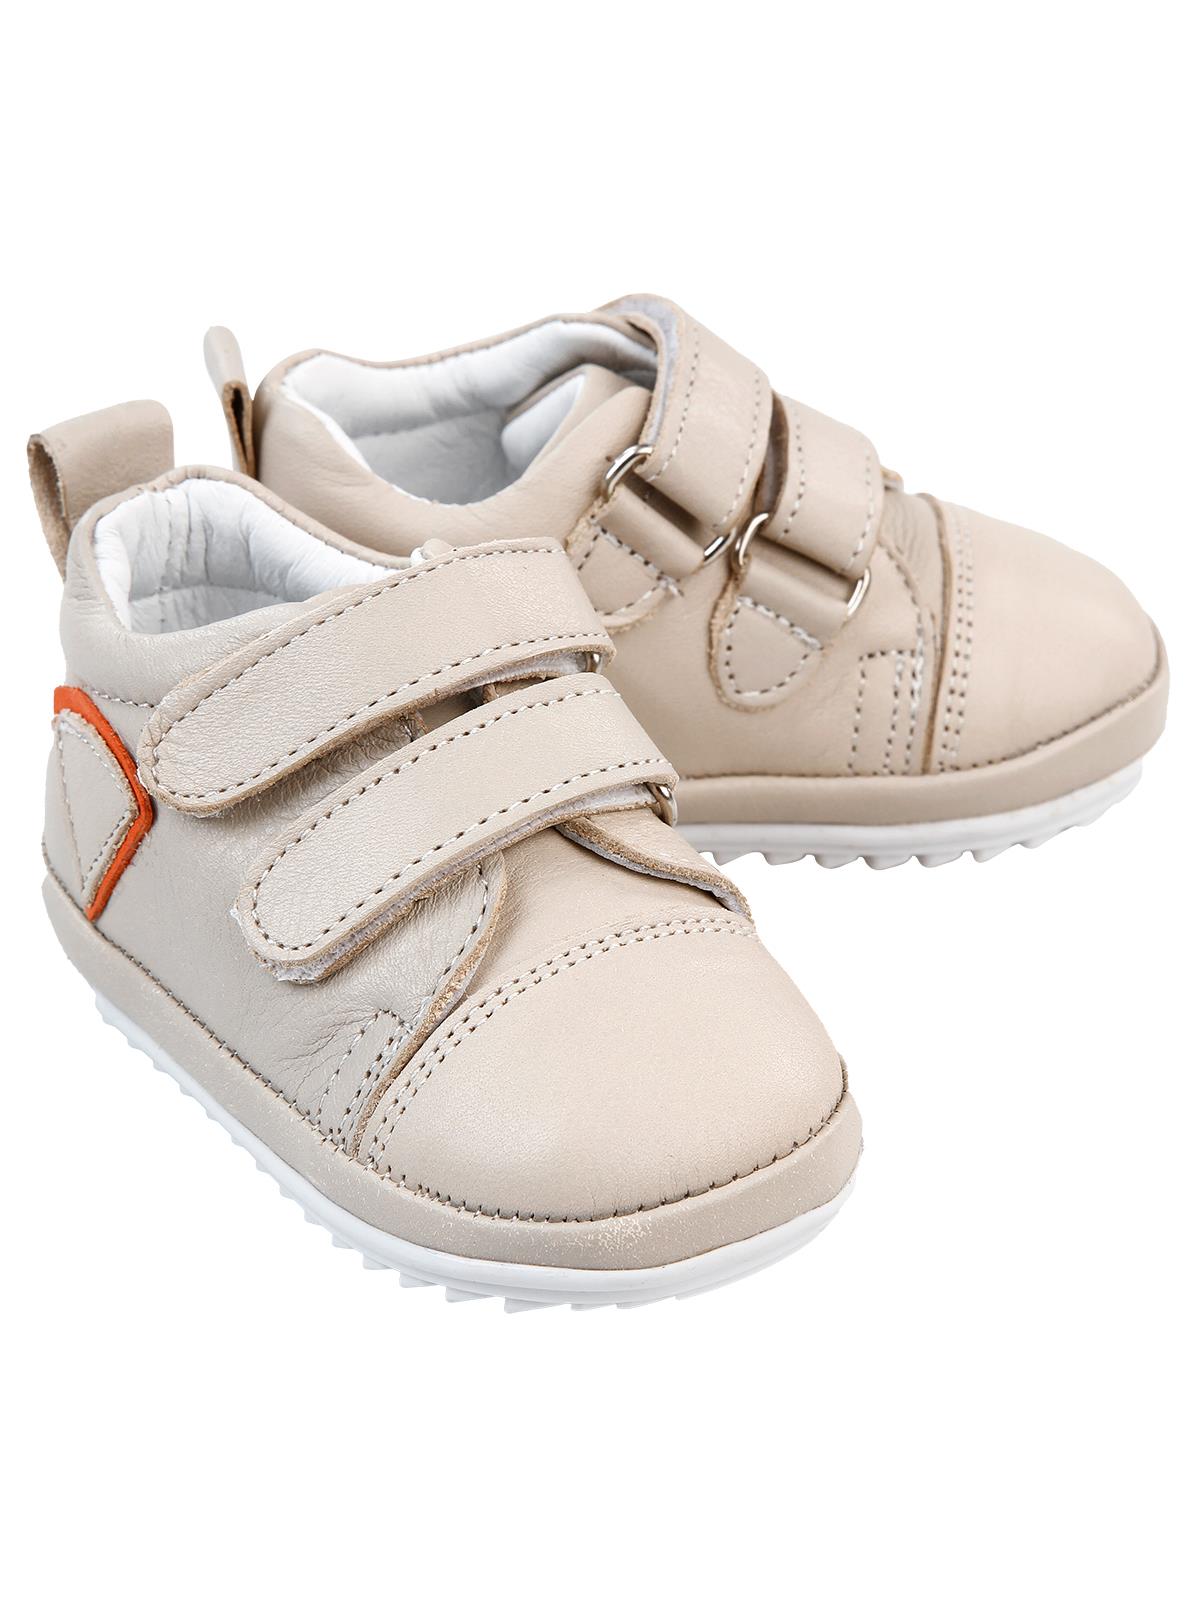 Baby Force Erkek Bebek Deri İlkadım Ayakkabısı 18-21 Numara Krem